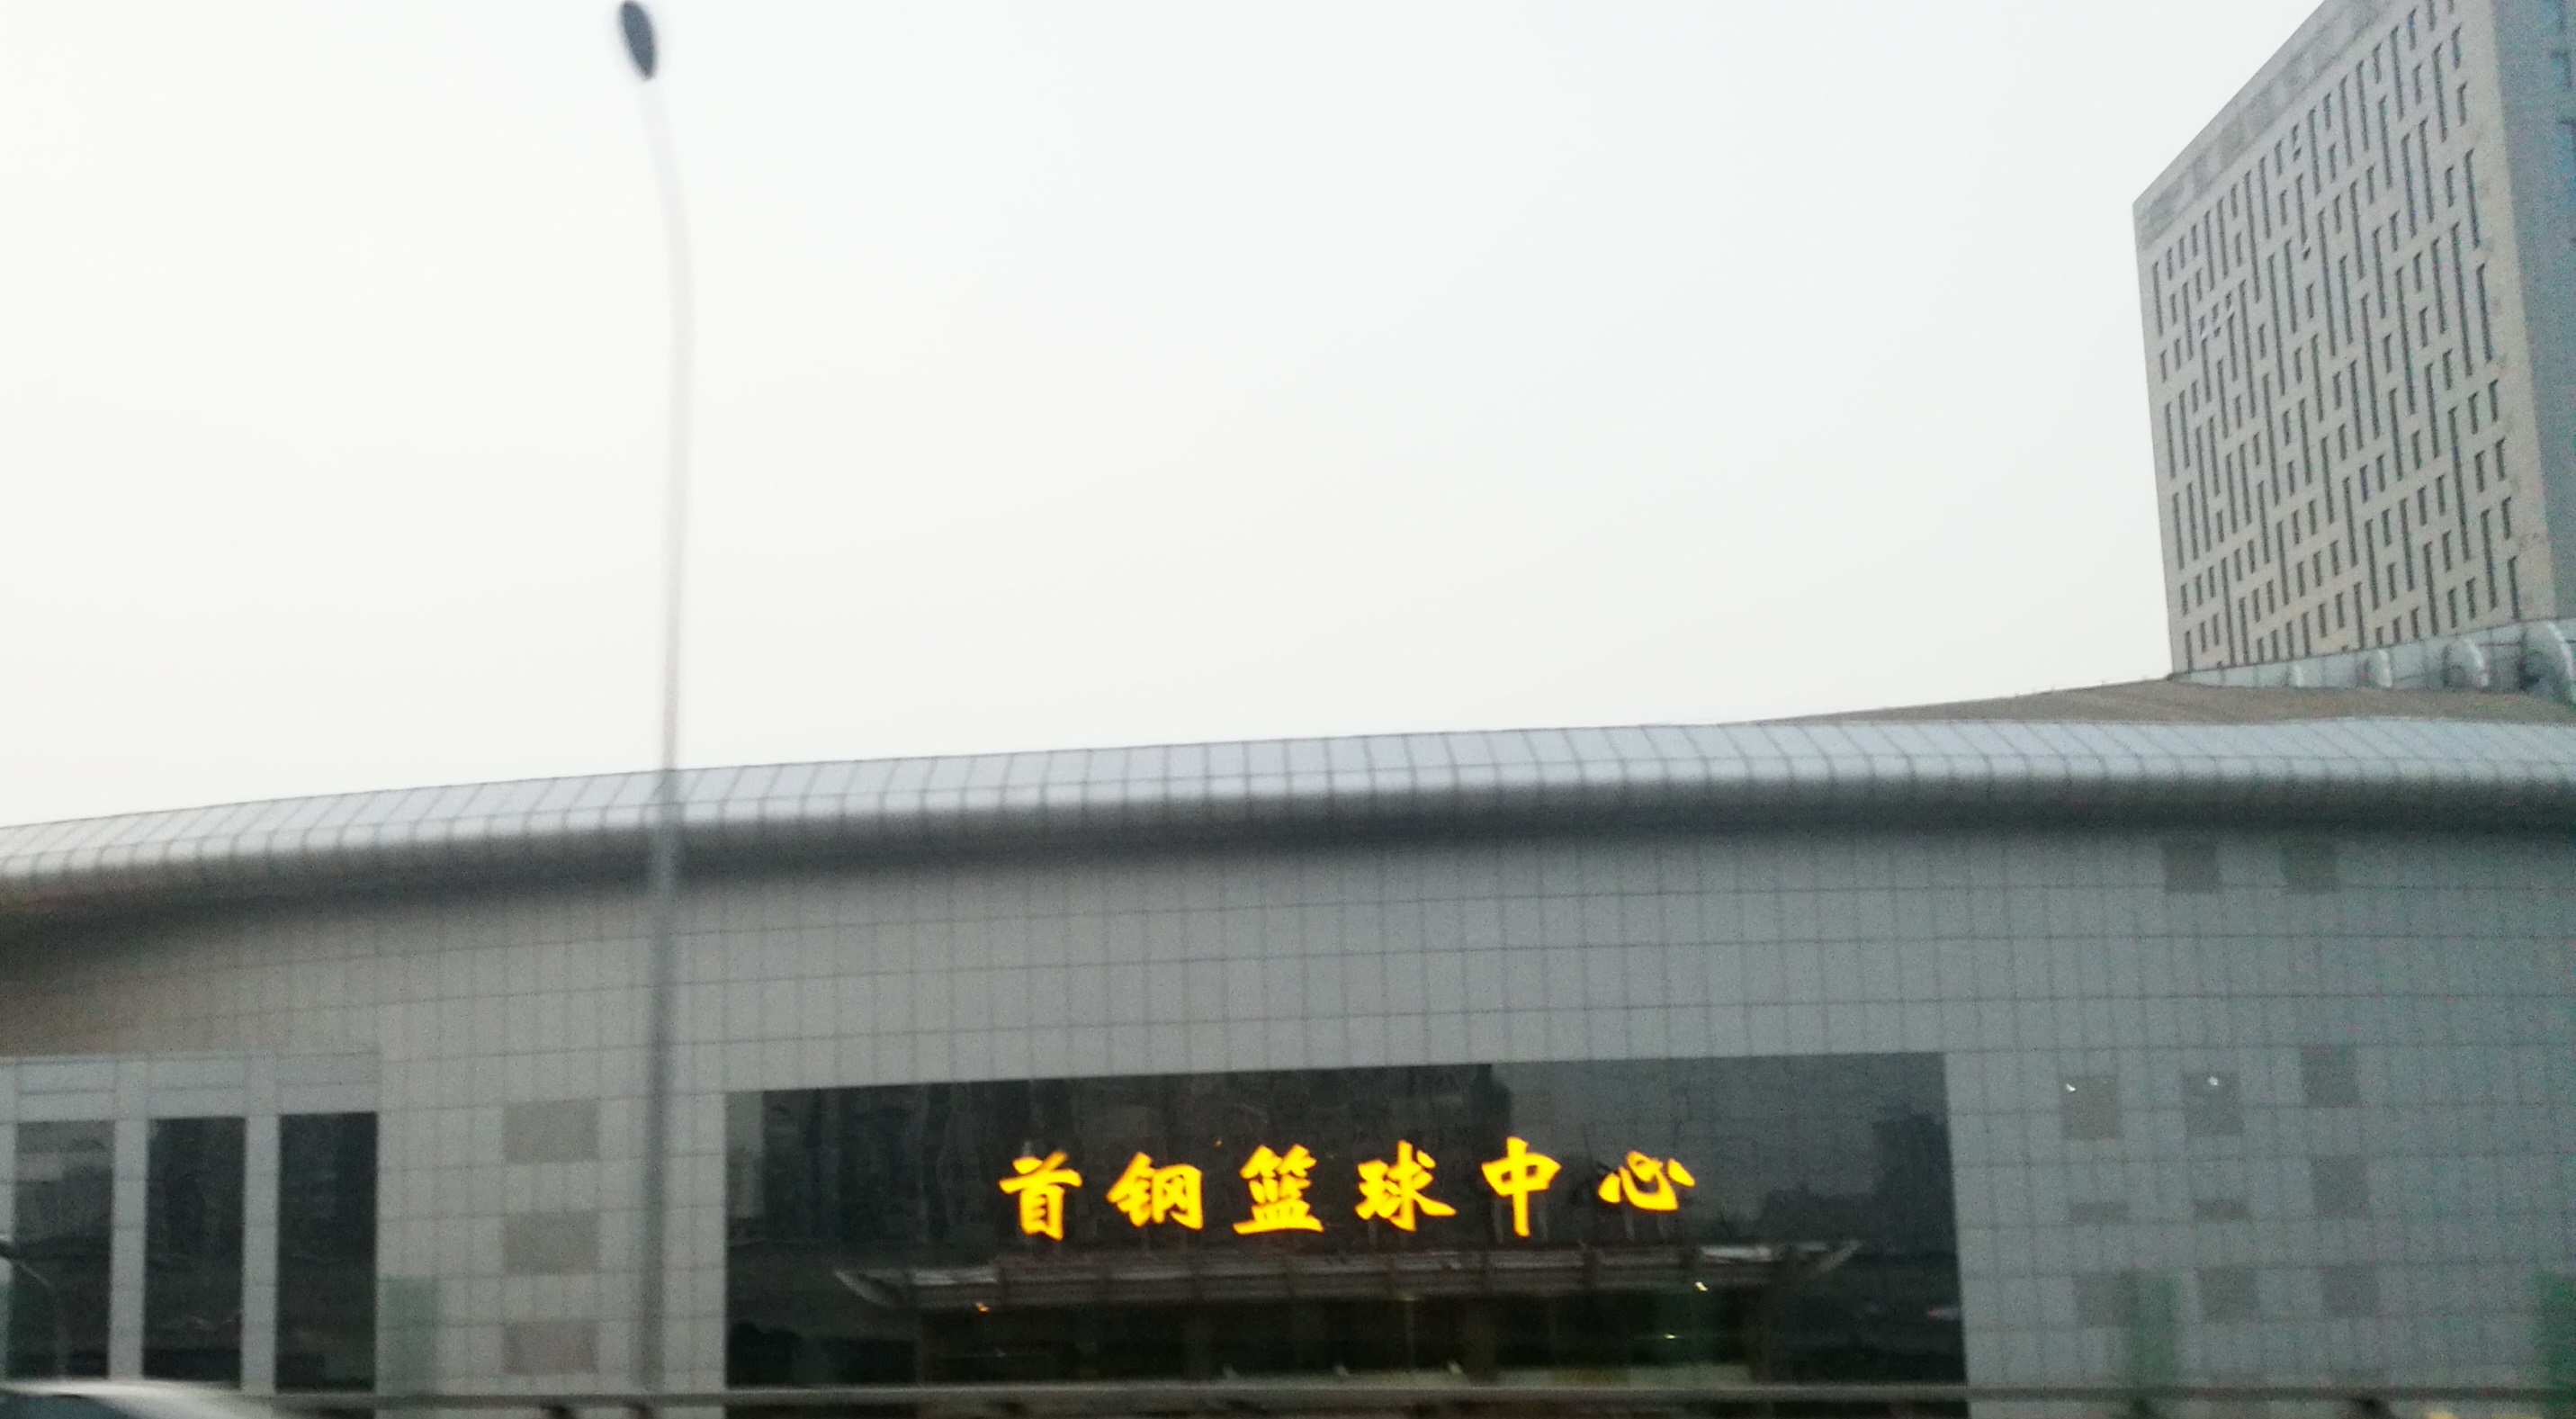 北京市西五环石景山区的风貌：一面是绵延大山，一面是城市天际线